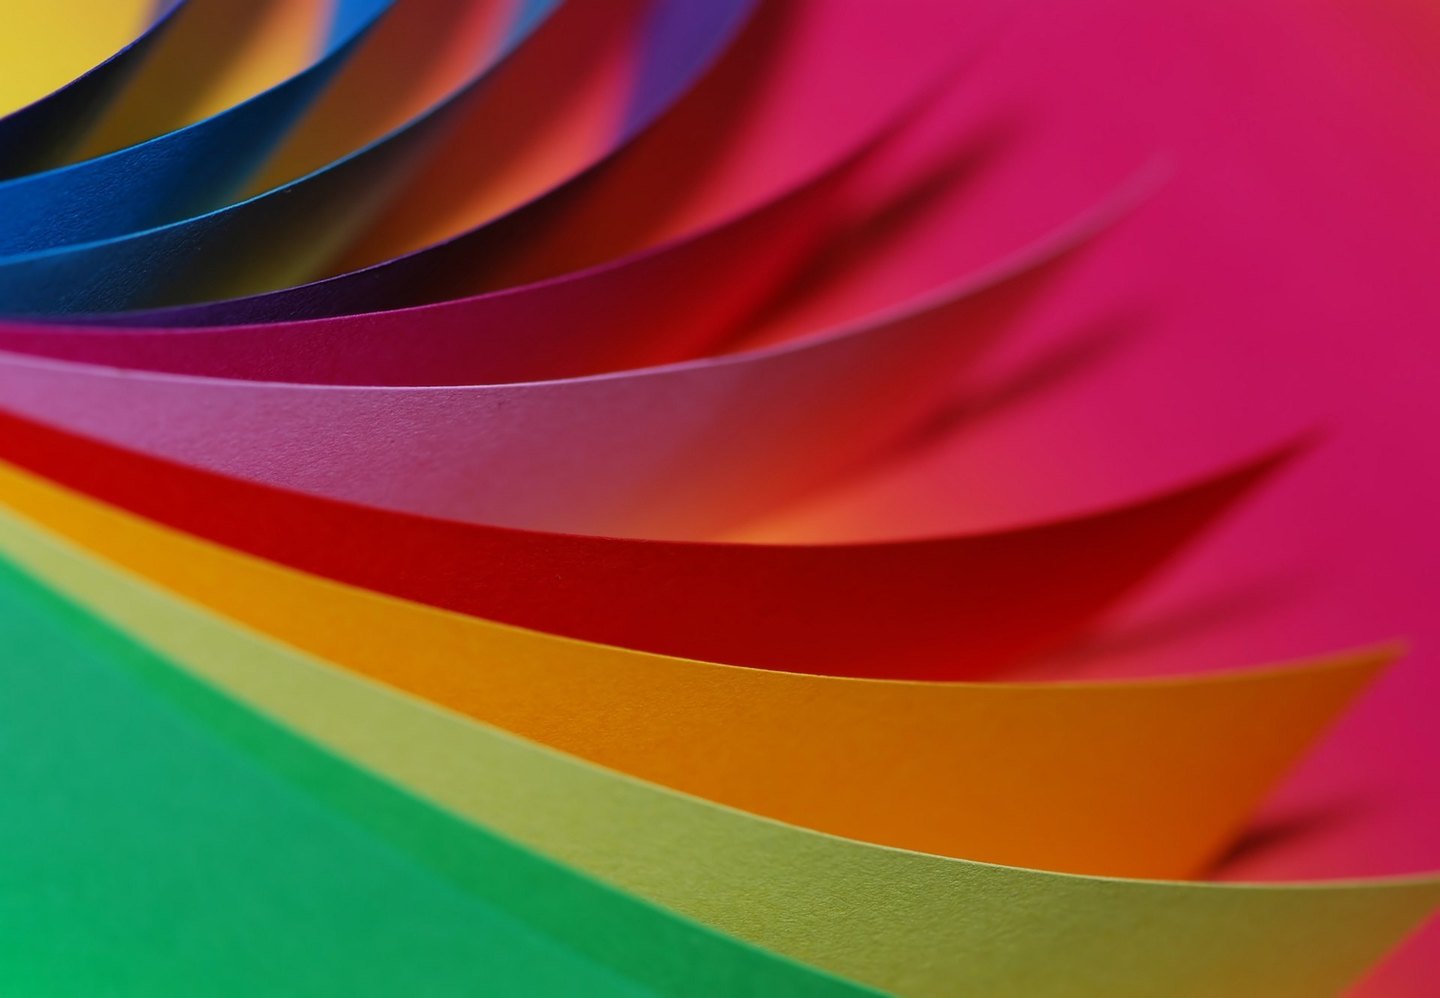 Psicologia das cores e fotografia: saiba como elas interagem